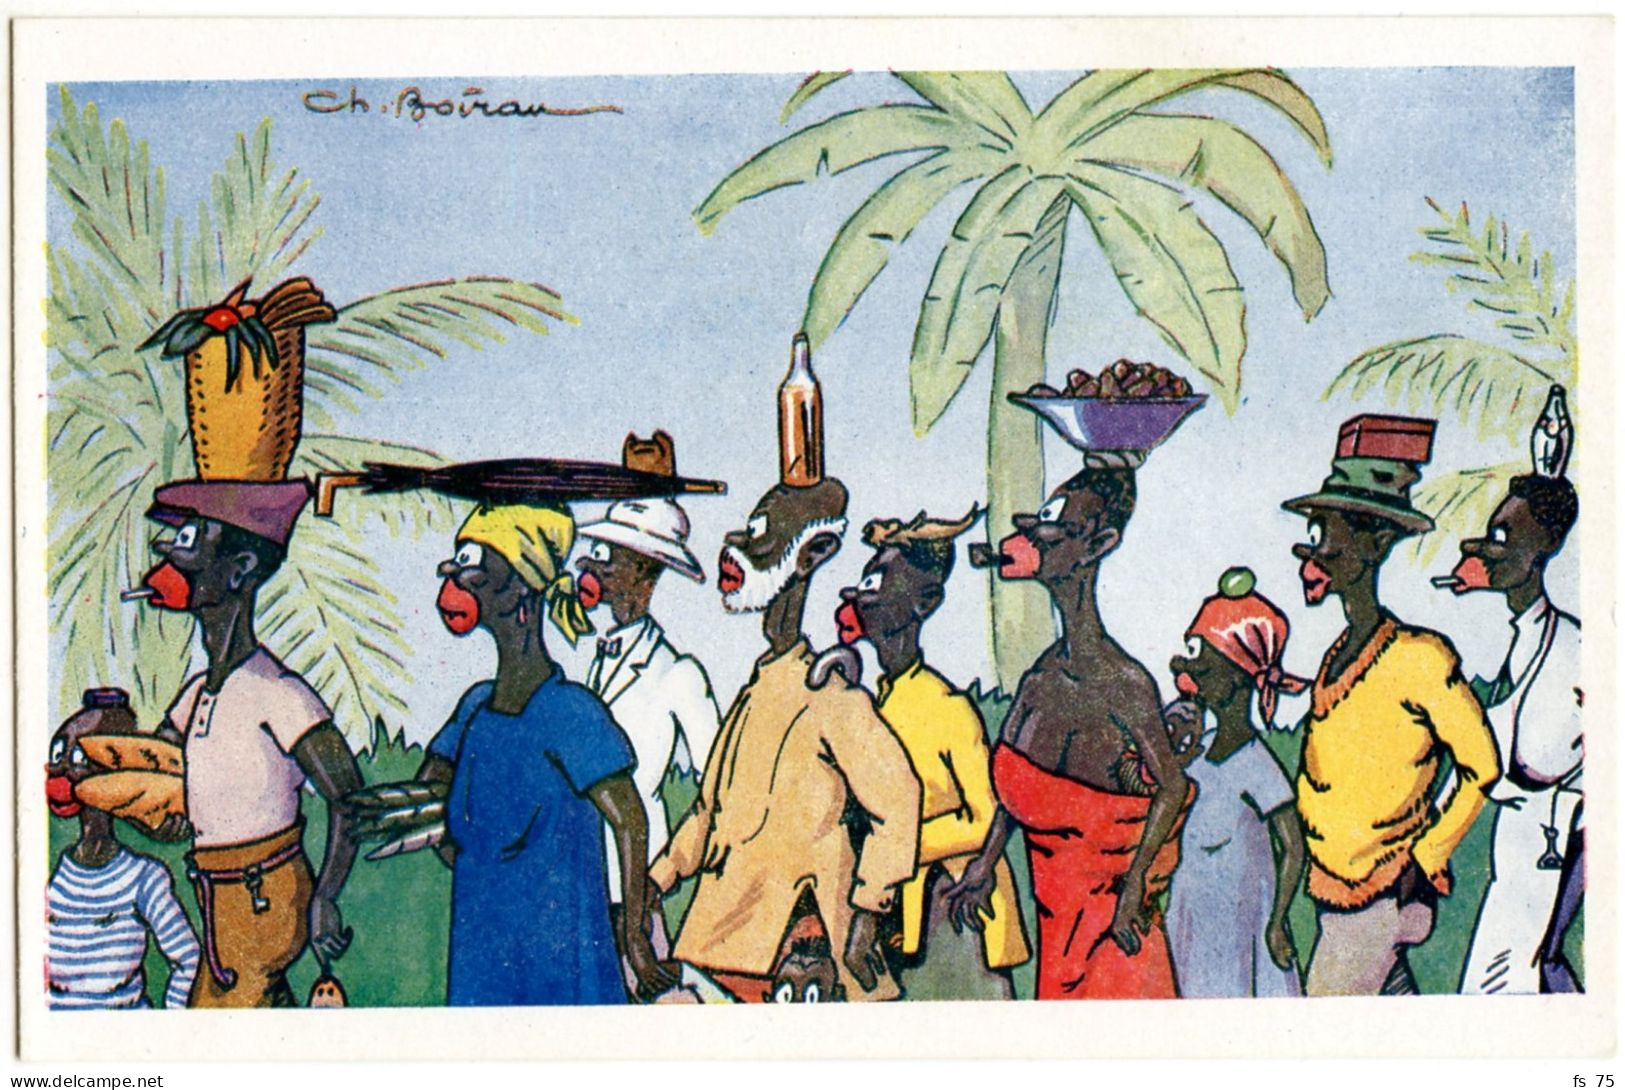 ILLUSTRATEUR - L'AFRIQUE VUE  PAR CH. BOIRAU - HUIT CARTES POSTALES DANS LEUR POCHETTE - SERIE A - R. PRUDENT EDITEUR